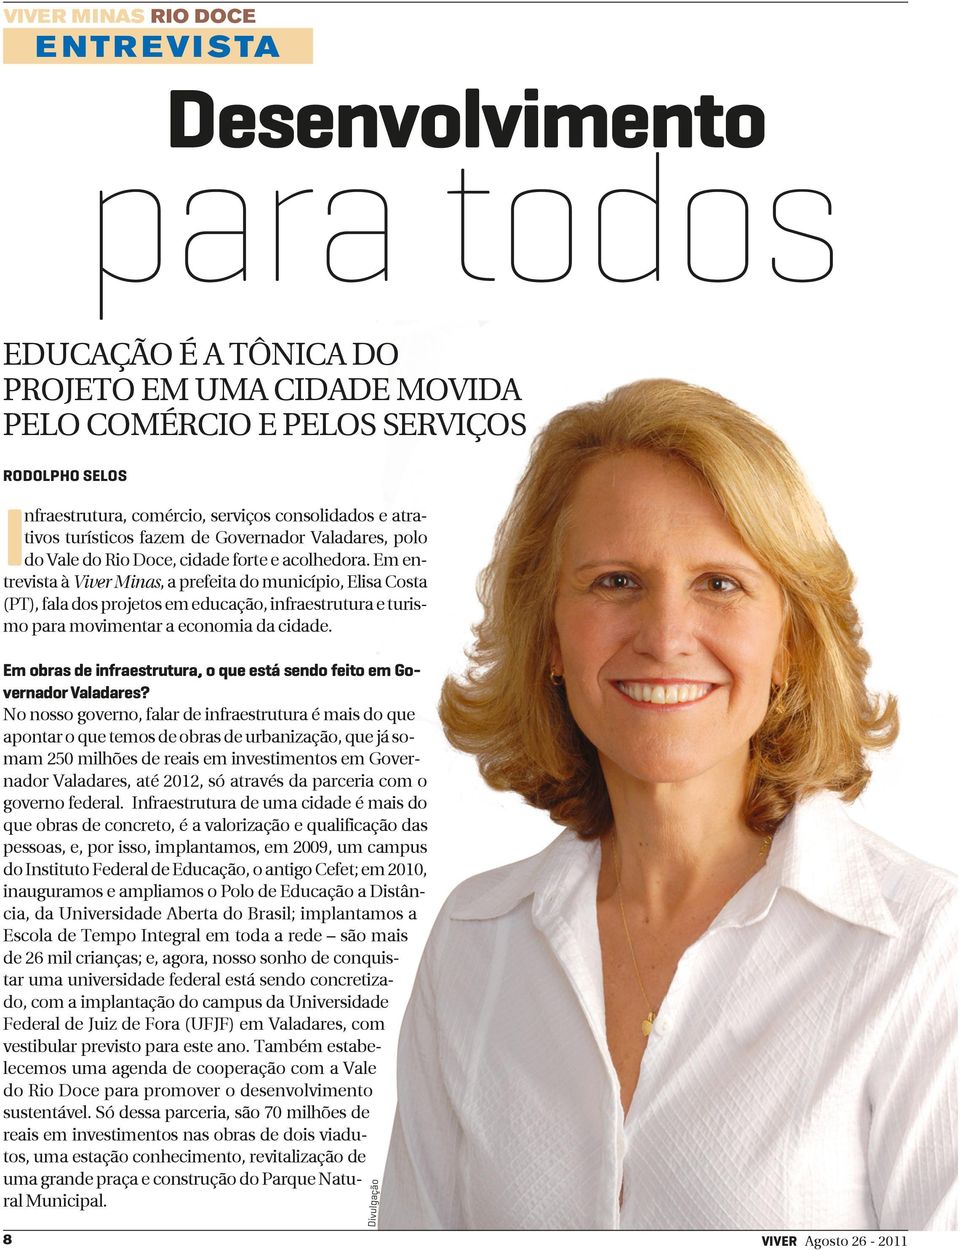 Em entrevista à Viver Minas, a prefeita do município, Elisa Costa (PT), fala dos projetos em educação, infraestrutura e turismo para movimentar a economia da cidade.